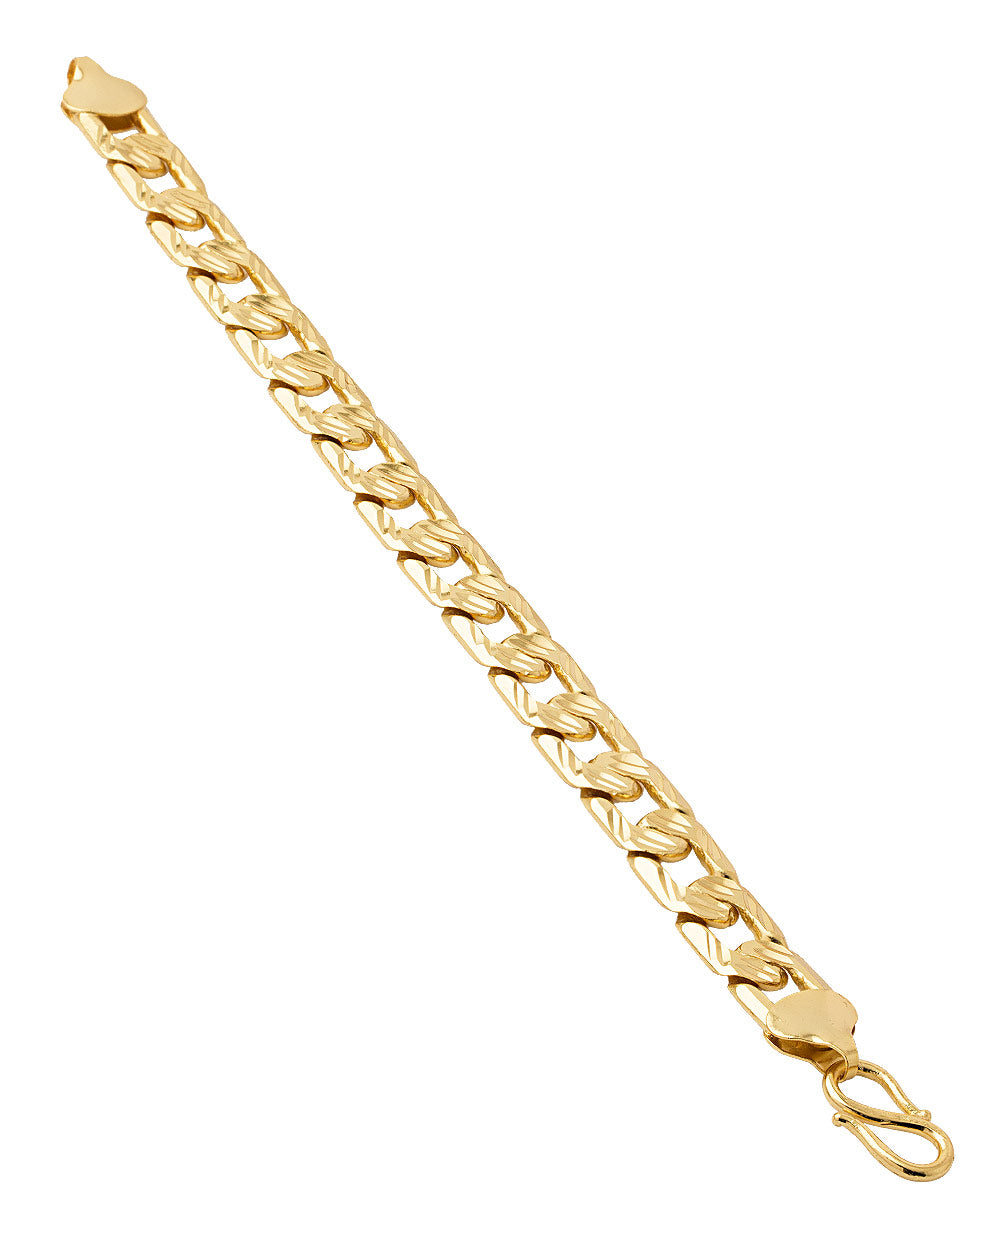 Gold Plated Bracelet For Men's